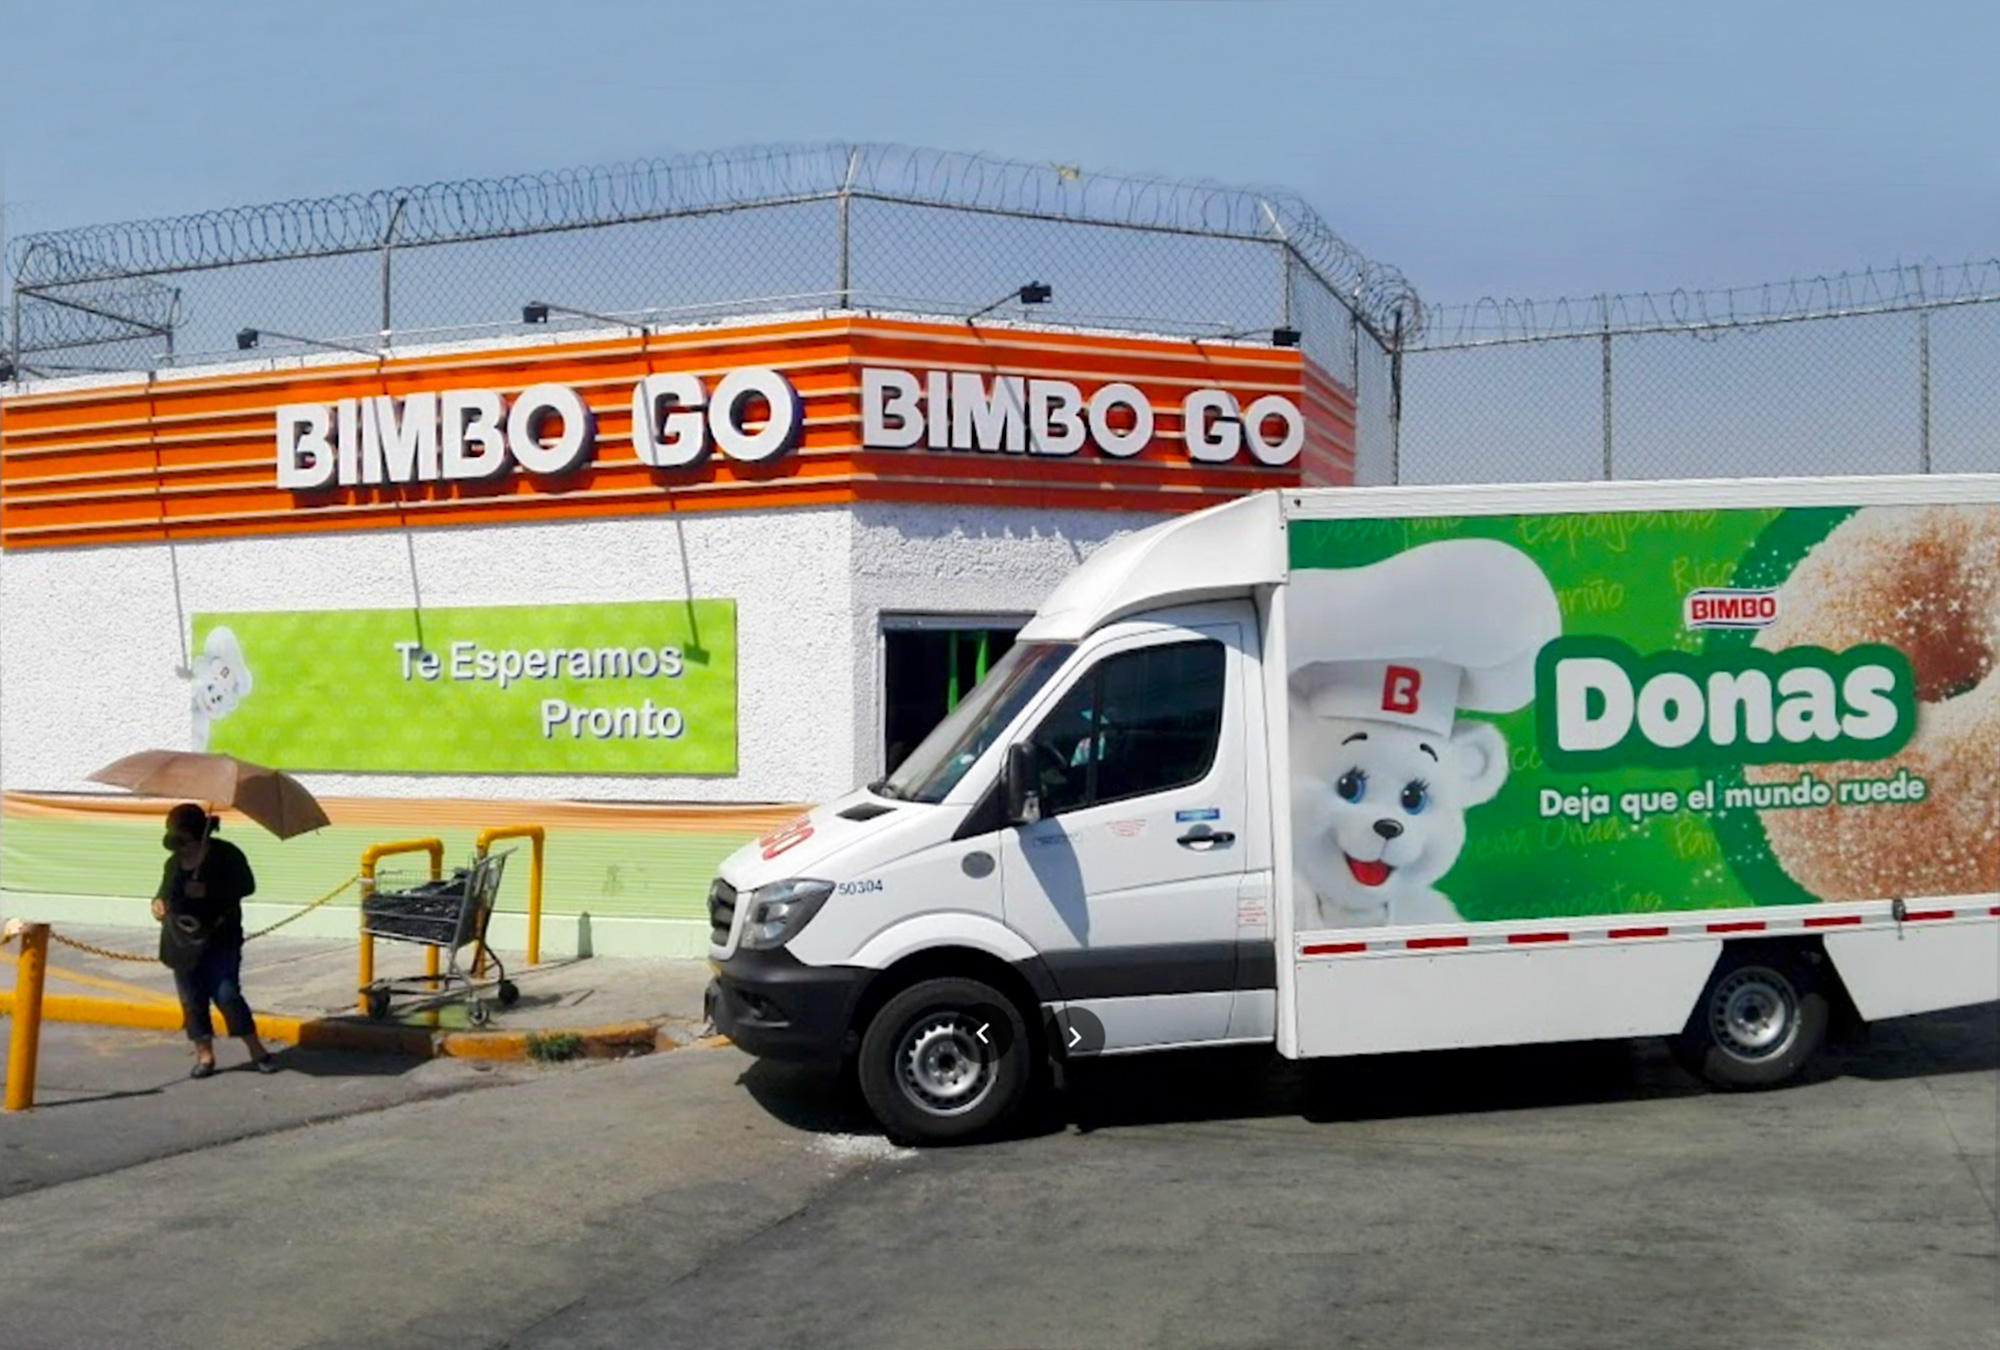 ¿Ya conoces las tiendas Bimbo Go?